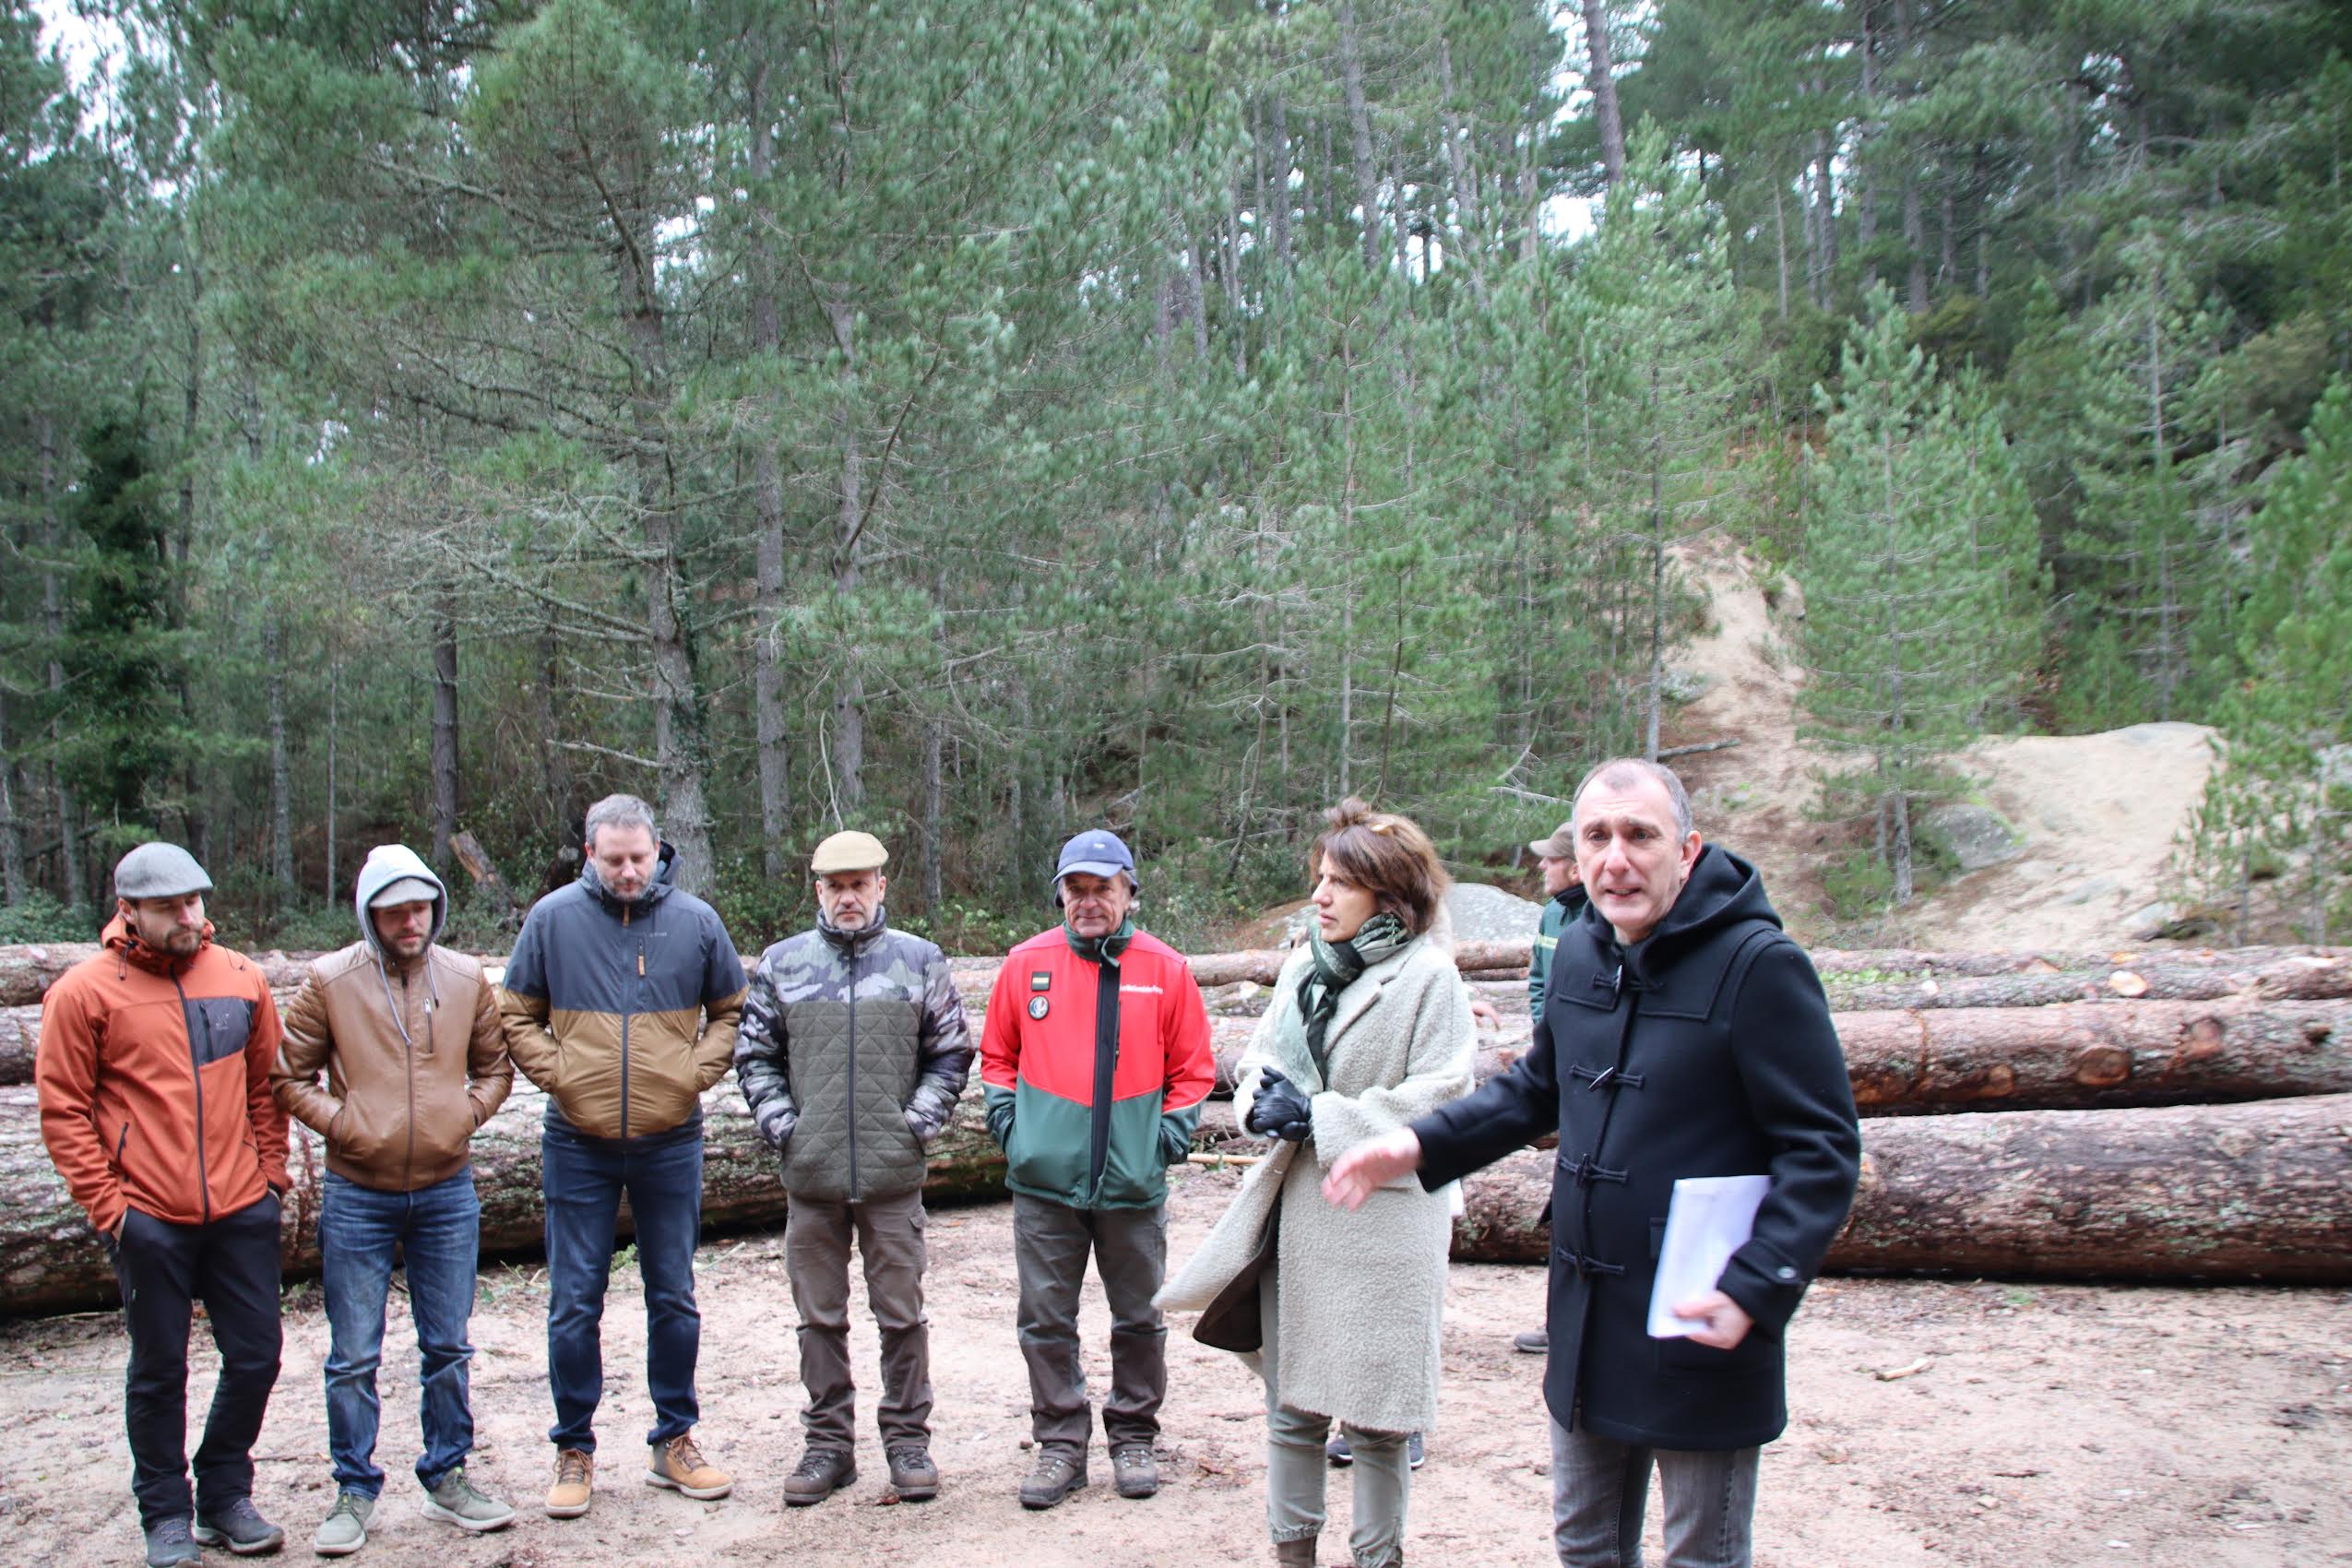 Pour le développement de la filière bois sur le territoire de la commune de Portivechju